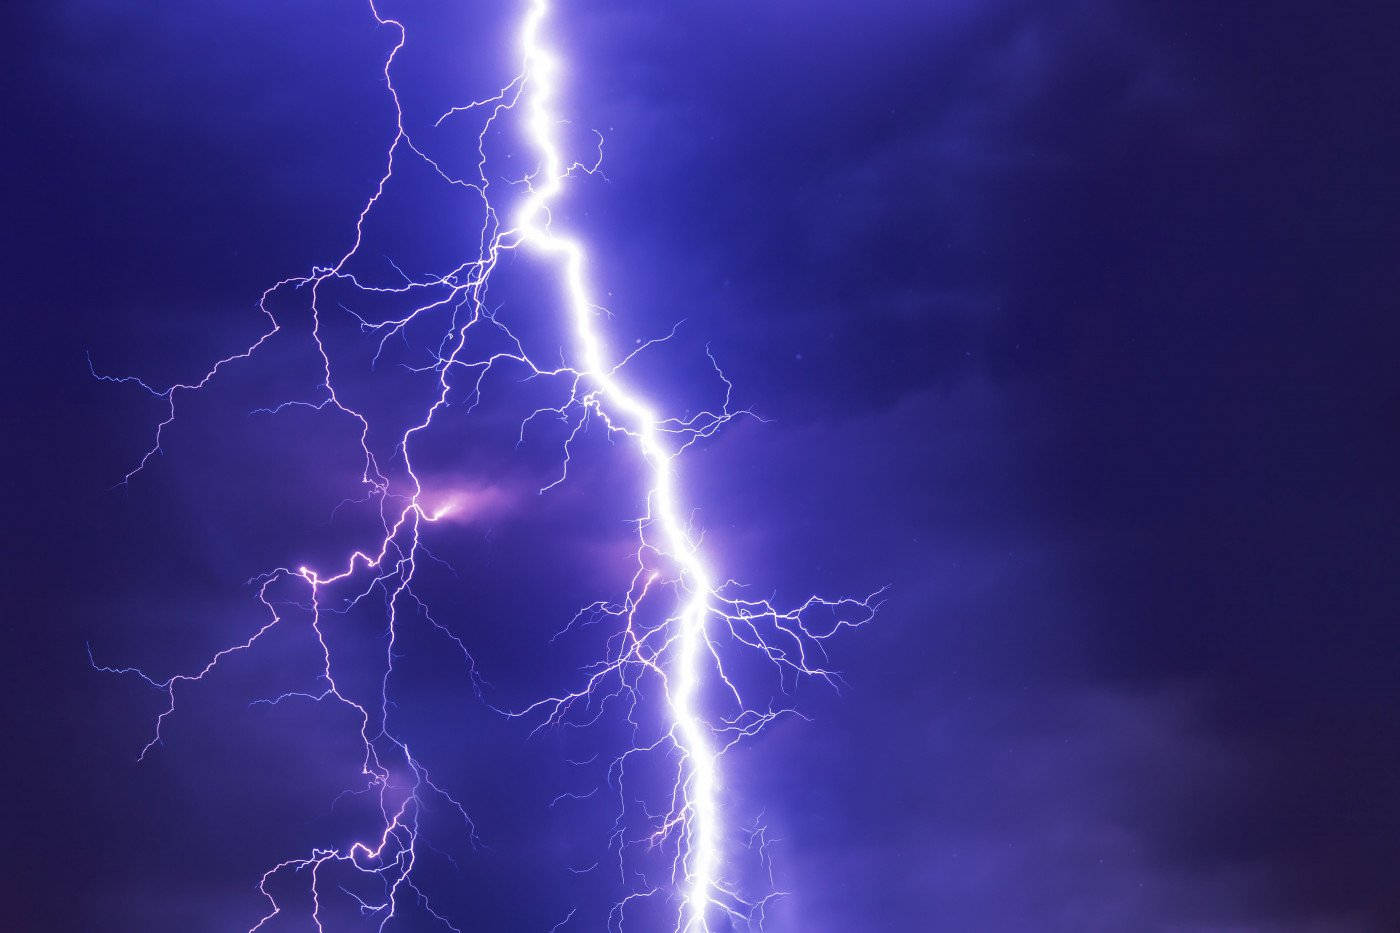 Thunderstorm Lightning Strike Wallpaper